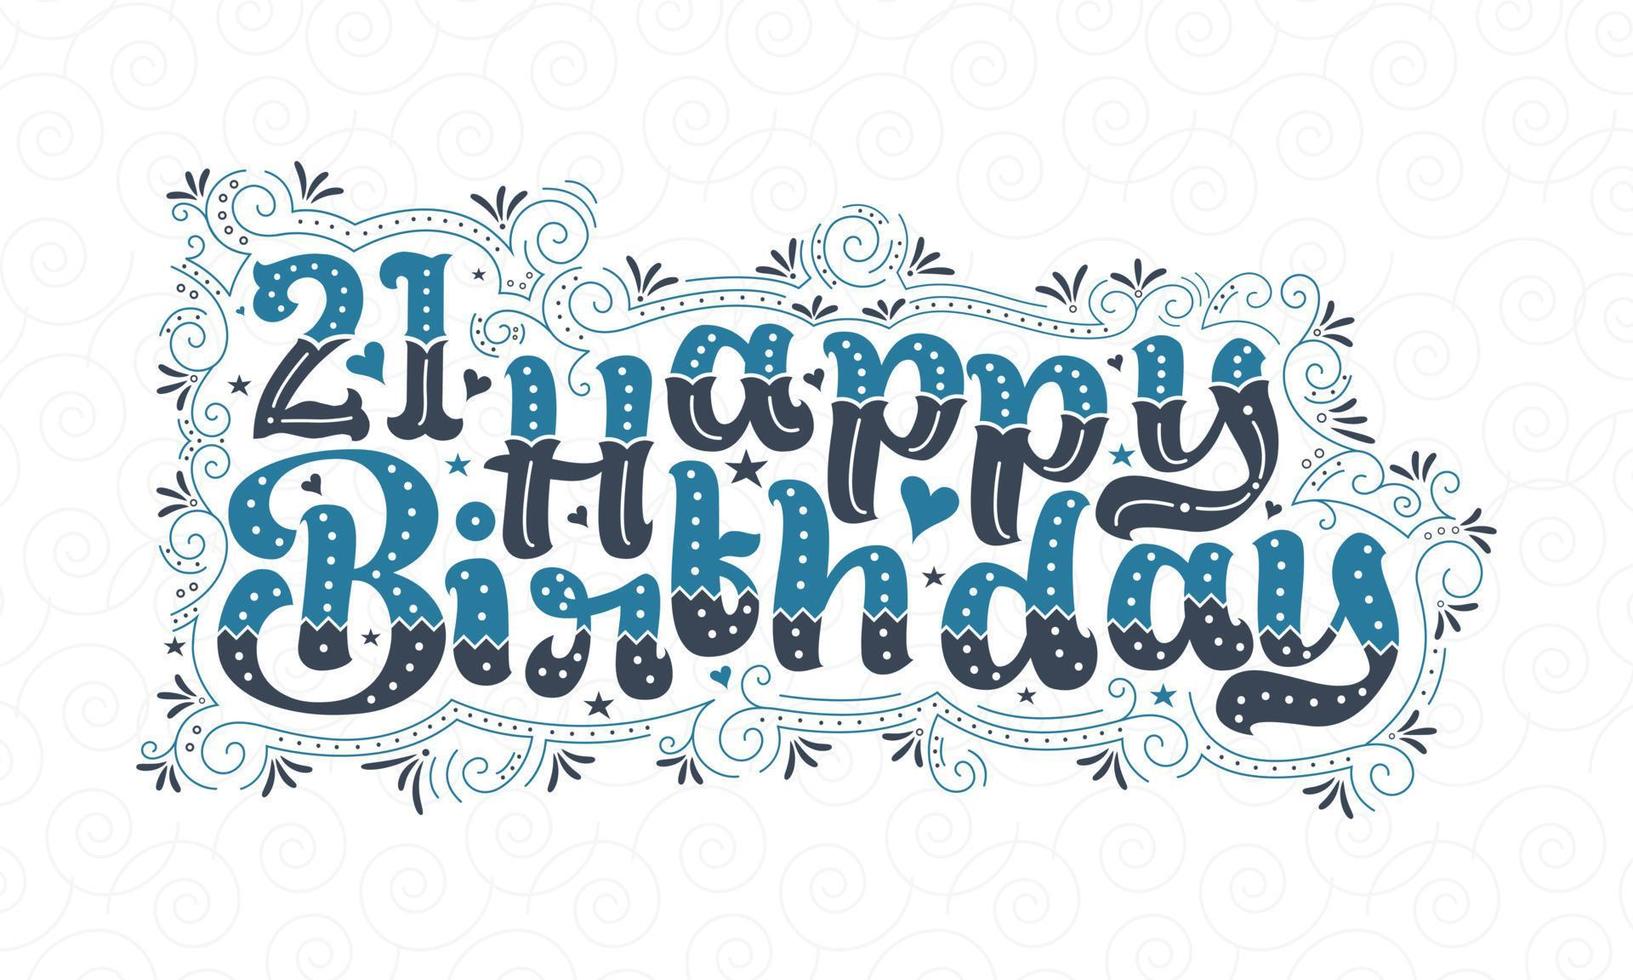 Letras de feliz cumpleaños 21, hermoso diseño tipográfico de cumpleaños de 21 años con puntos, líneas y hojas azules y negros. vector